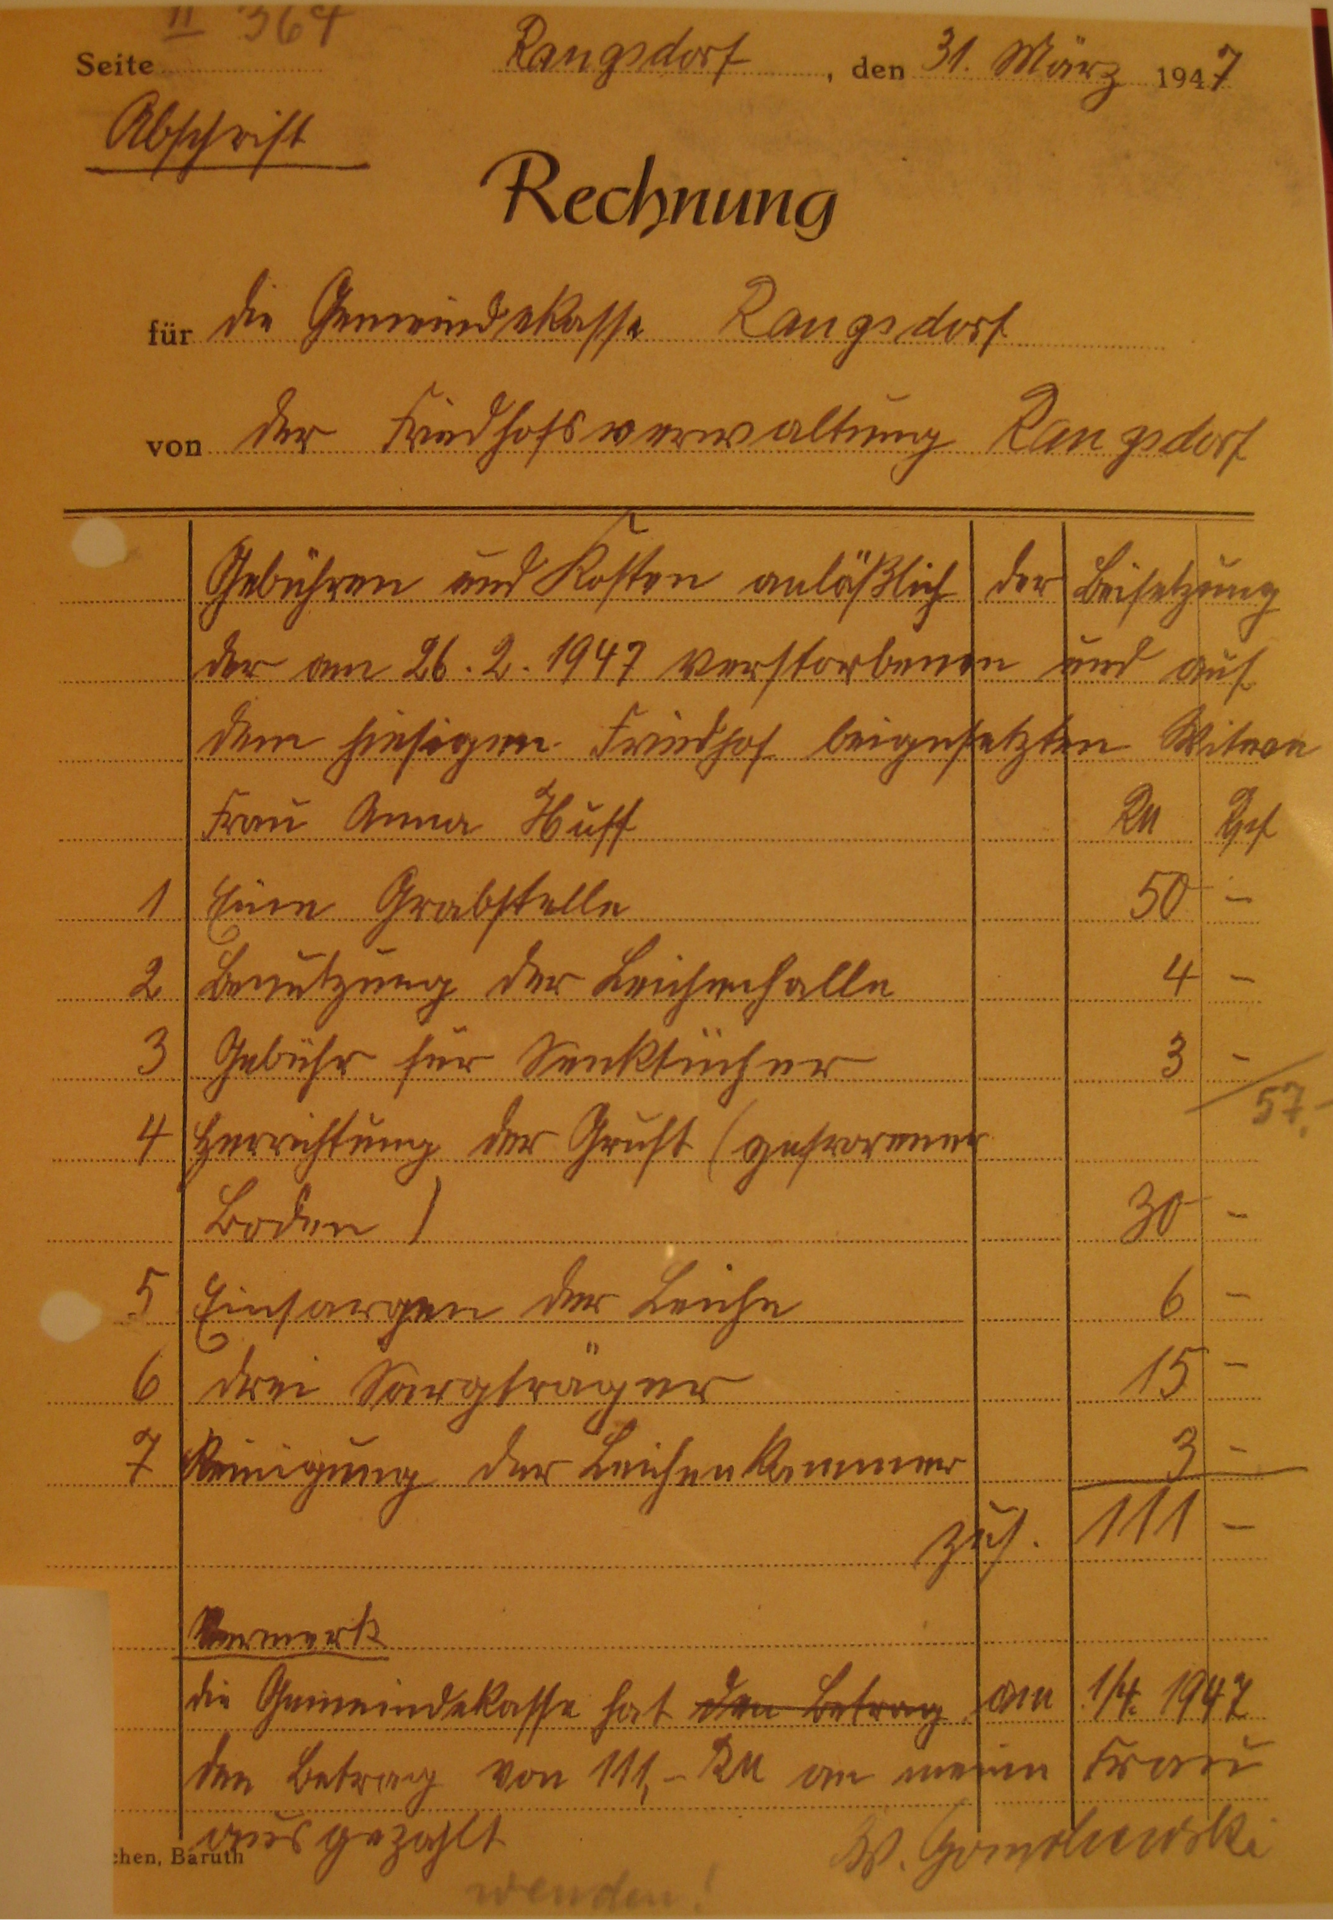 Rechnung vom 31.03.1947